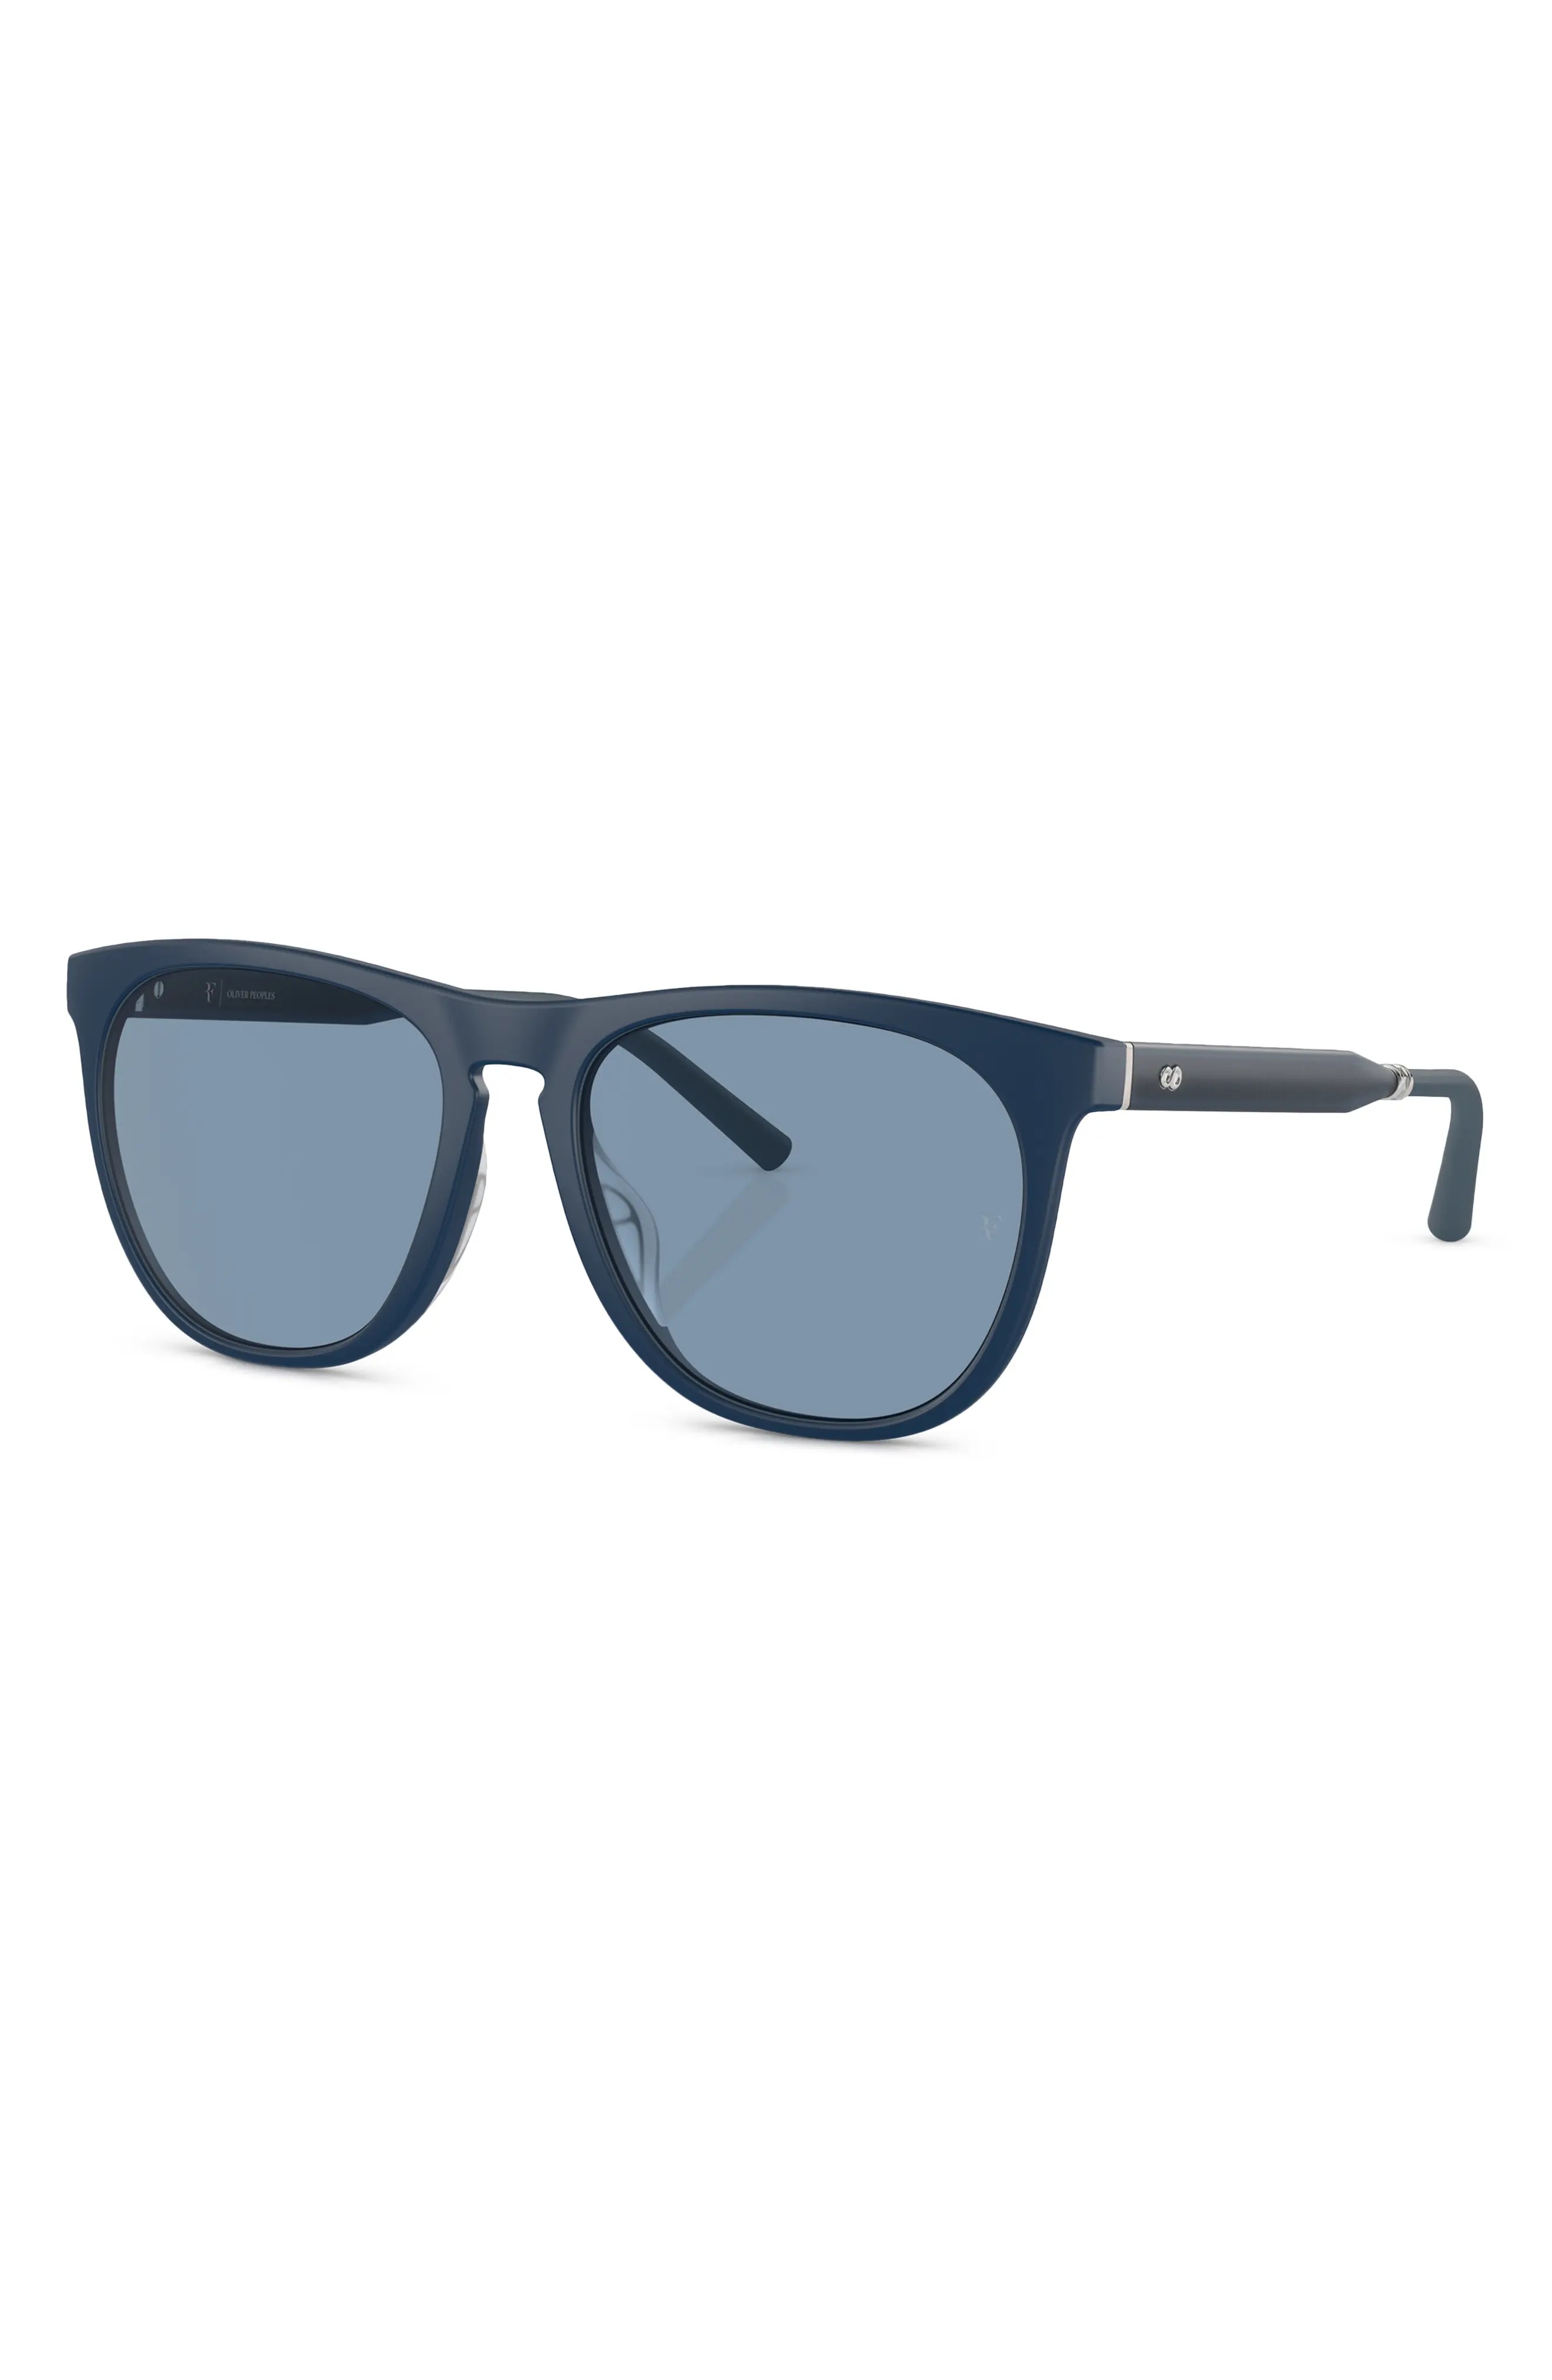 x Roger Federer R-1 55mm Irregular Sunglasses - 2